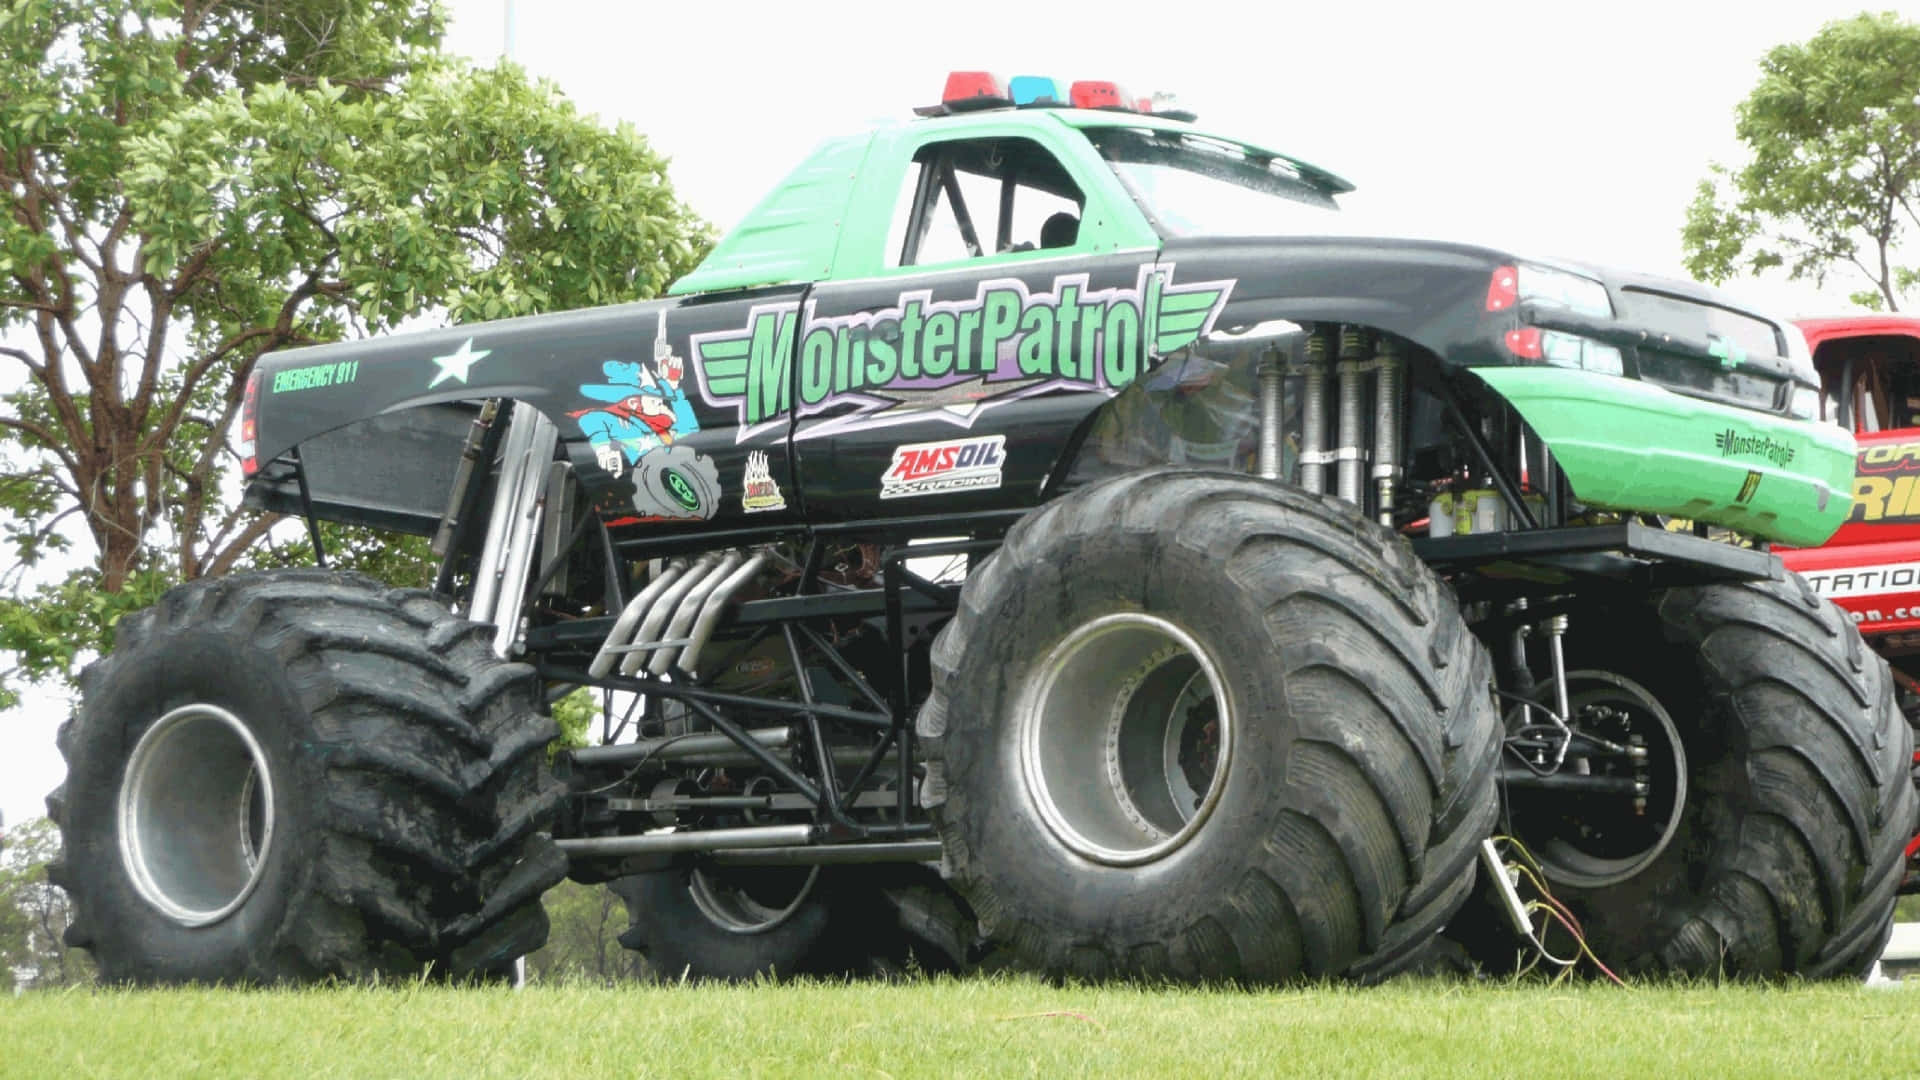 A Green Monster Truck